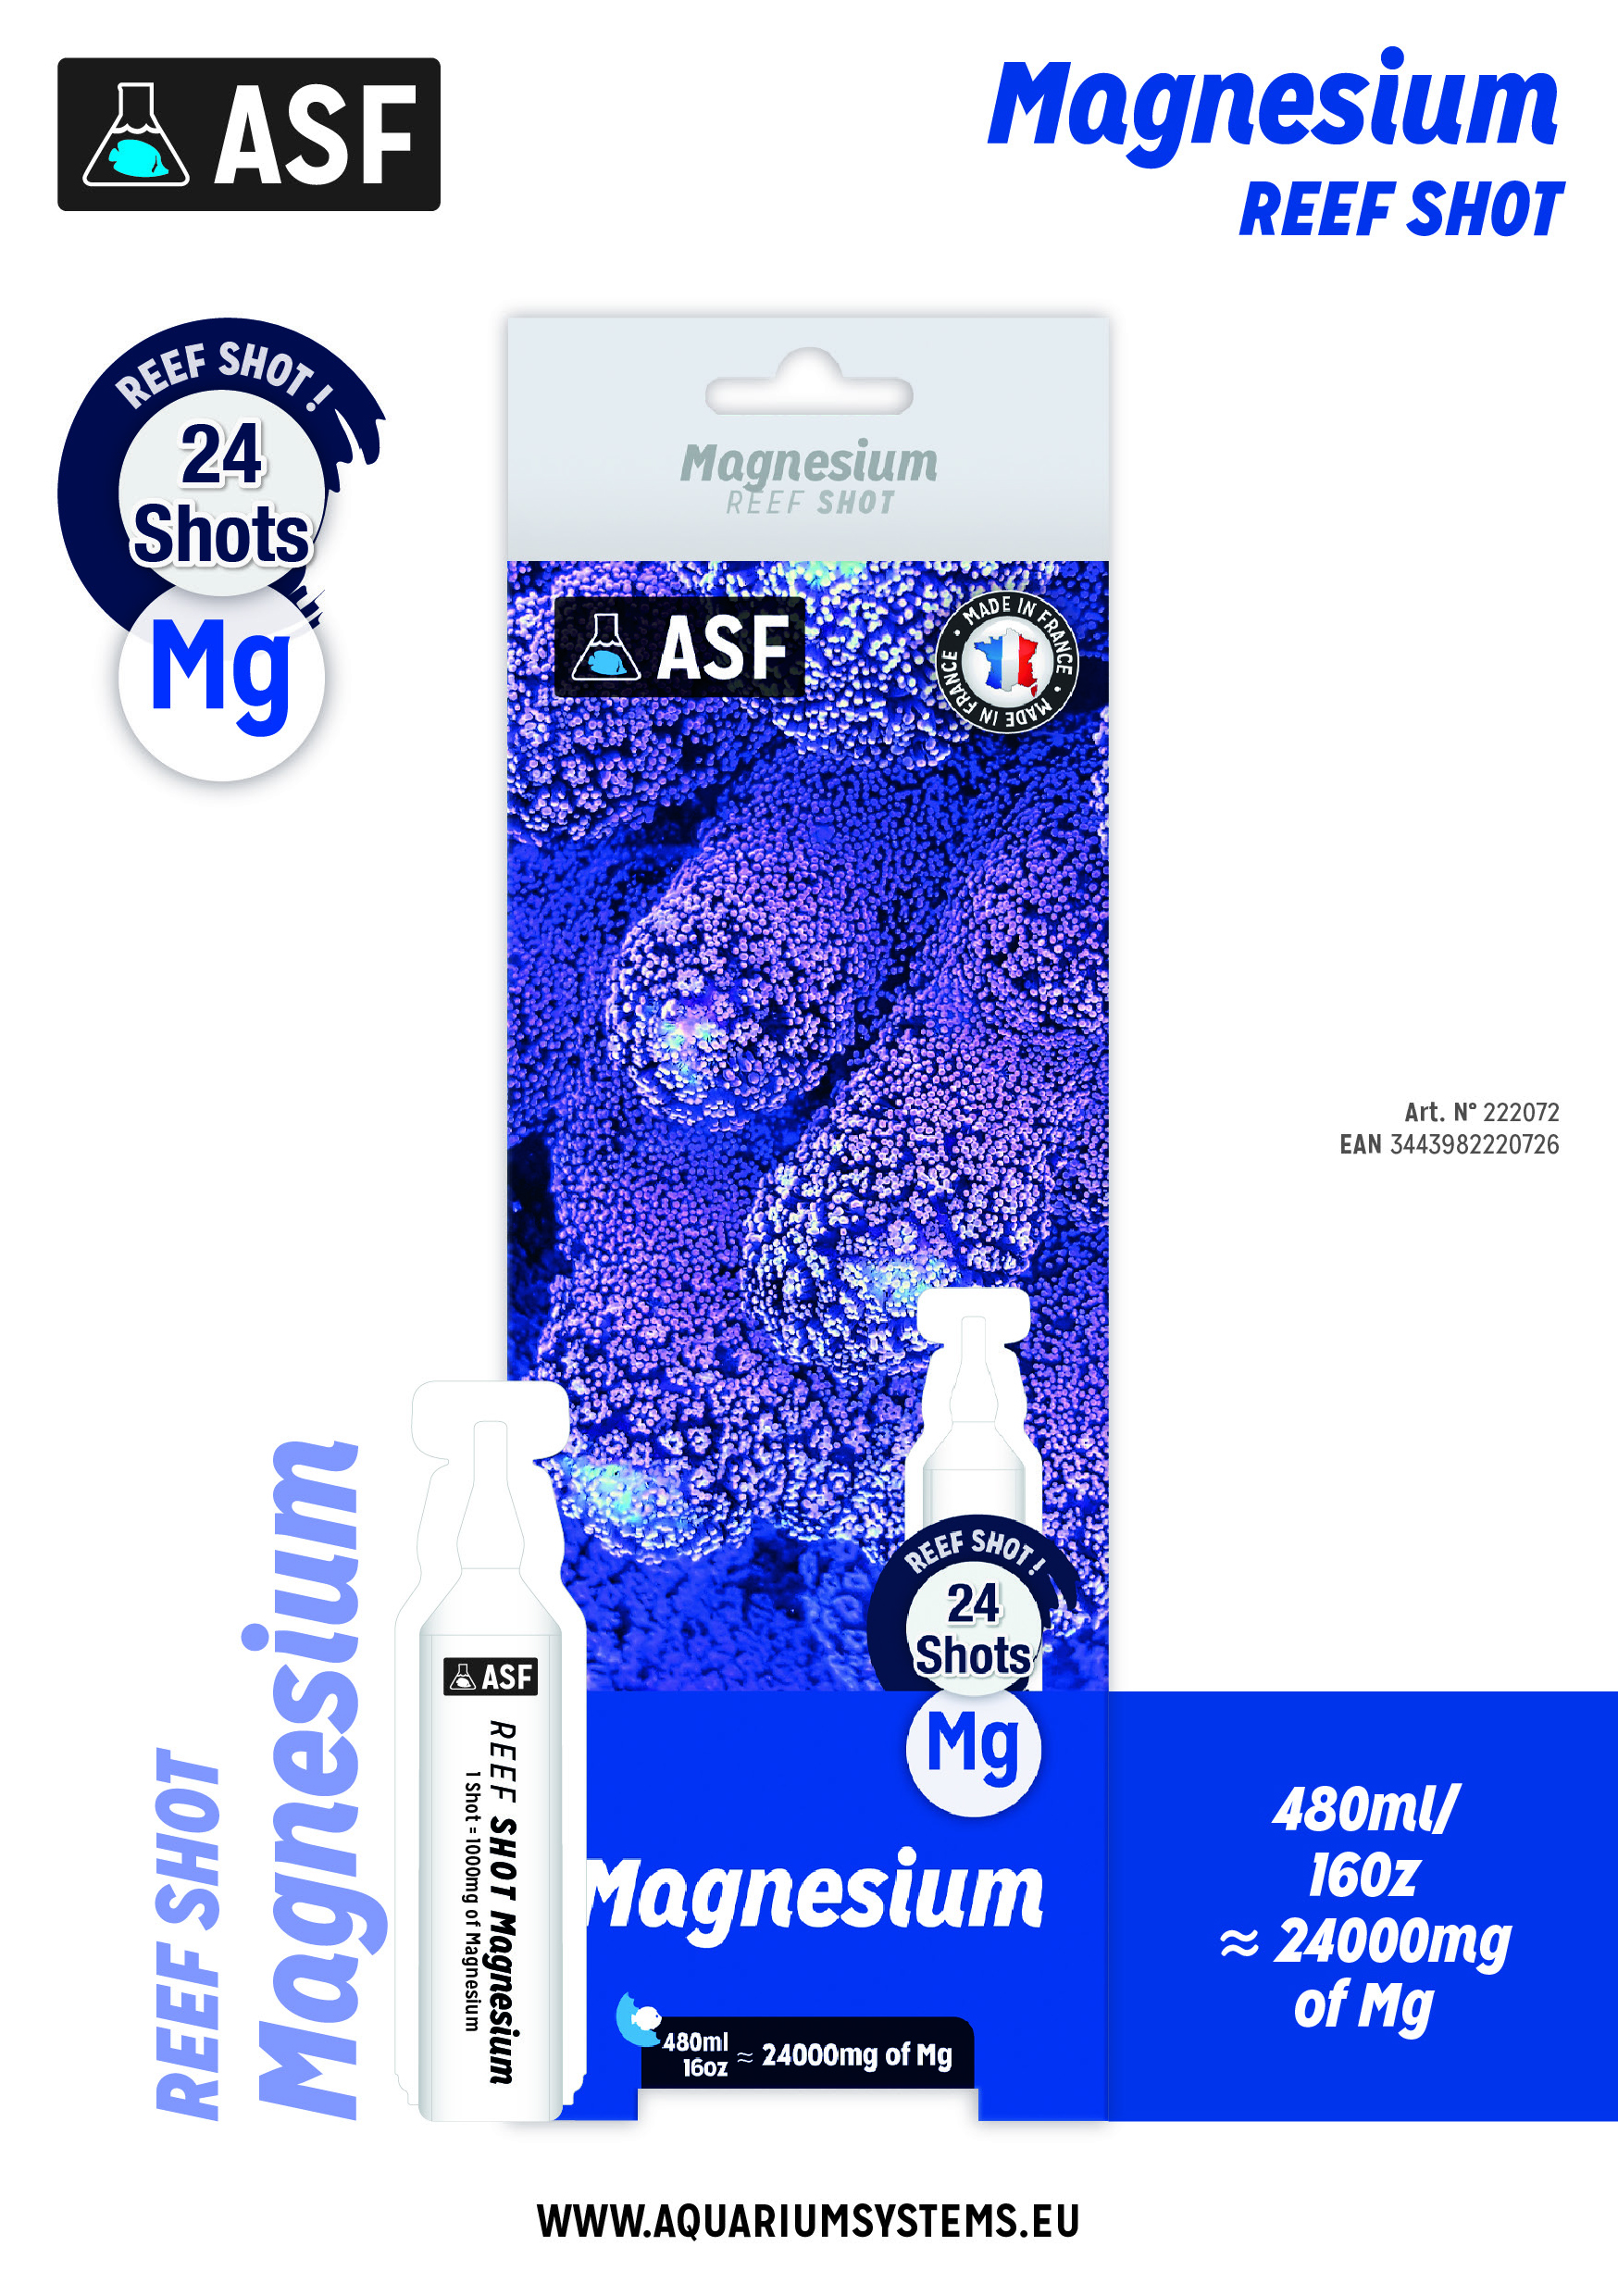 Magnesium1 1